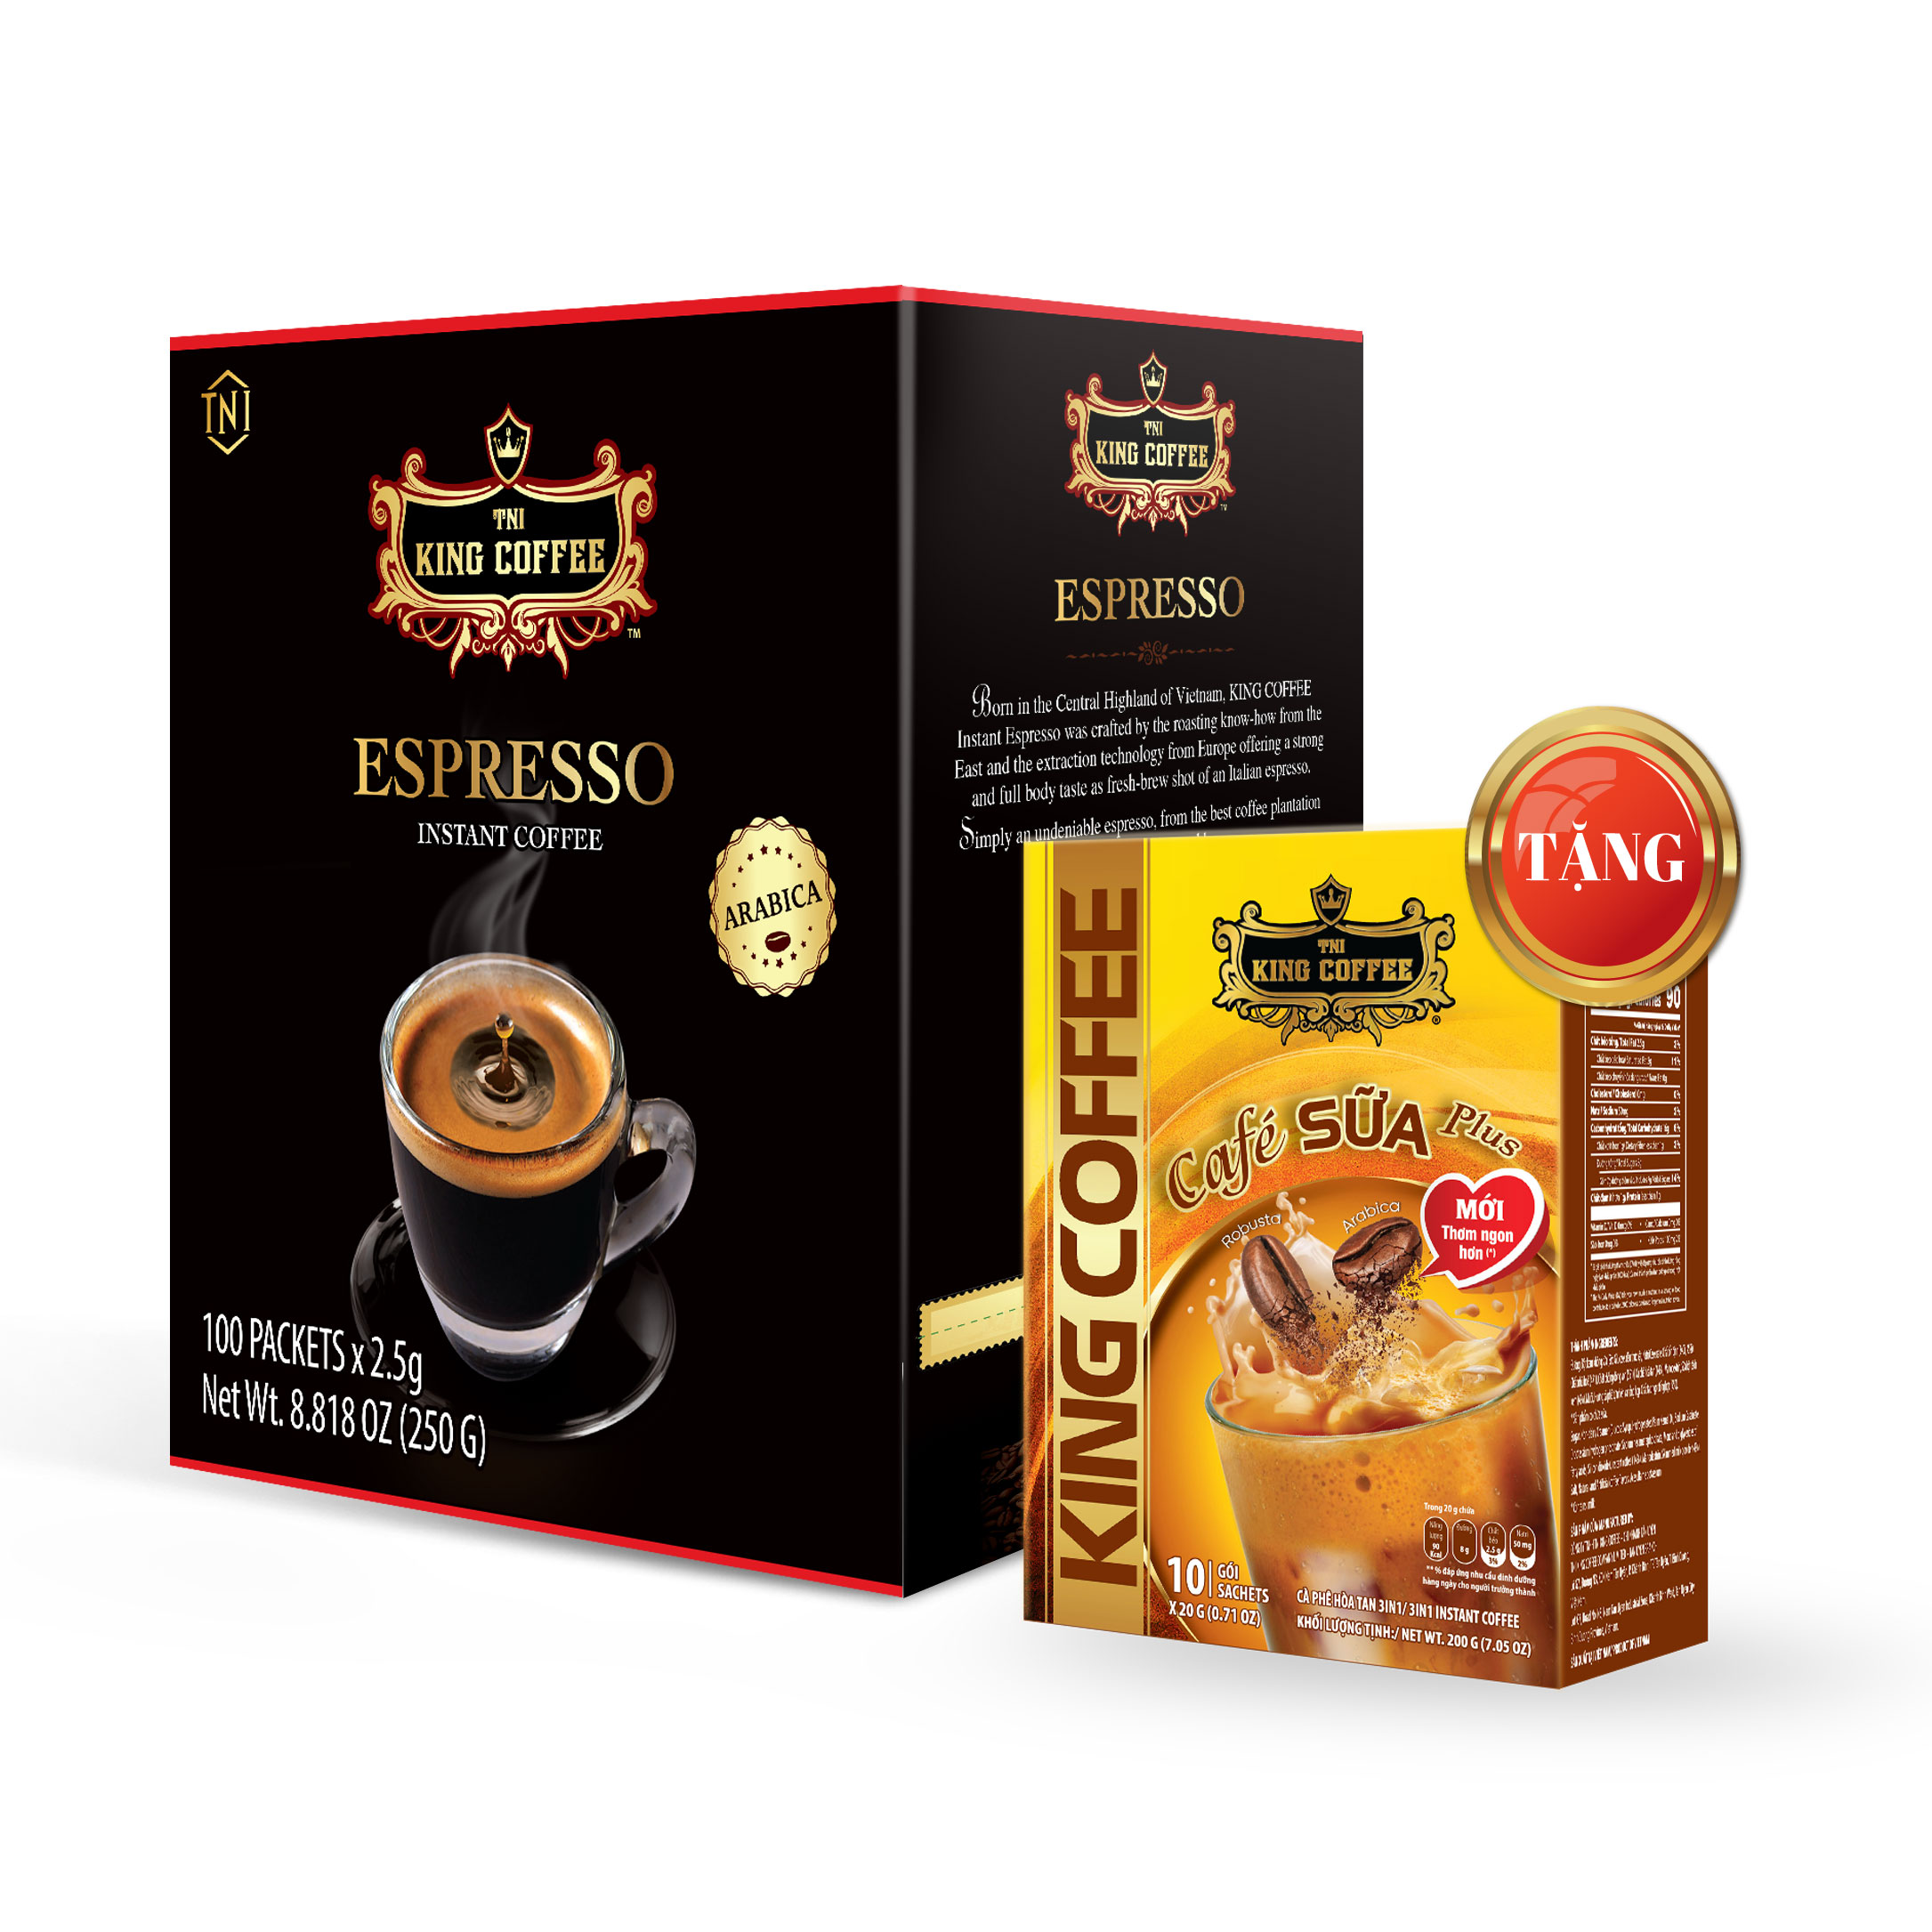 Hình ảnh Combo 1 Cà Phê Hòa Tan Espresso KING COFFEE - Hộp 100 gói x 2.5g + Tặng 1 Cà Phê Sữa PLUS Hòa Tan 3in1 KING COFFEE - Hộp 10 gói x 20g